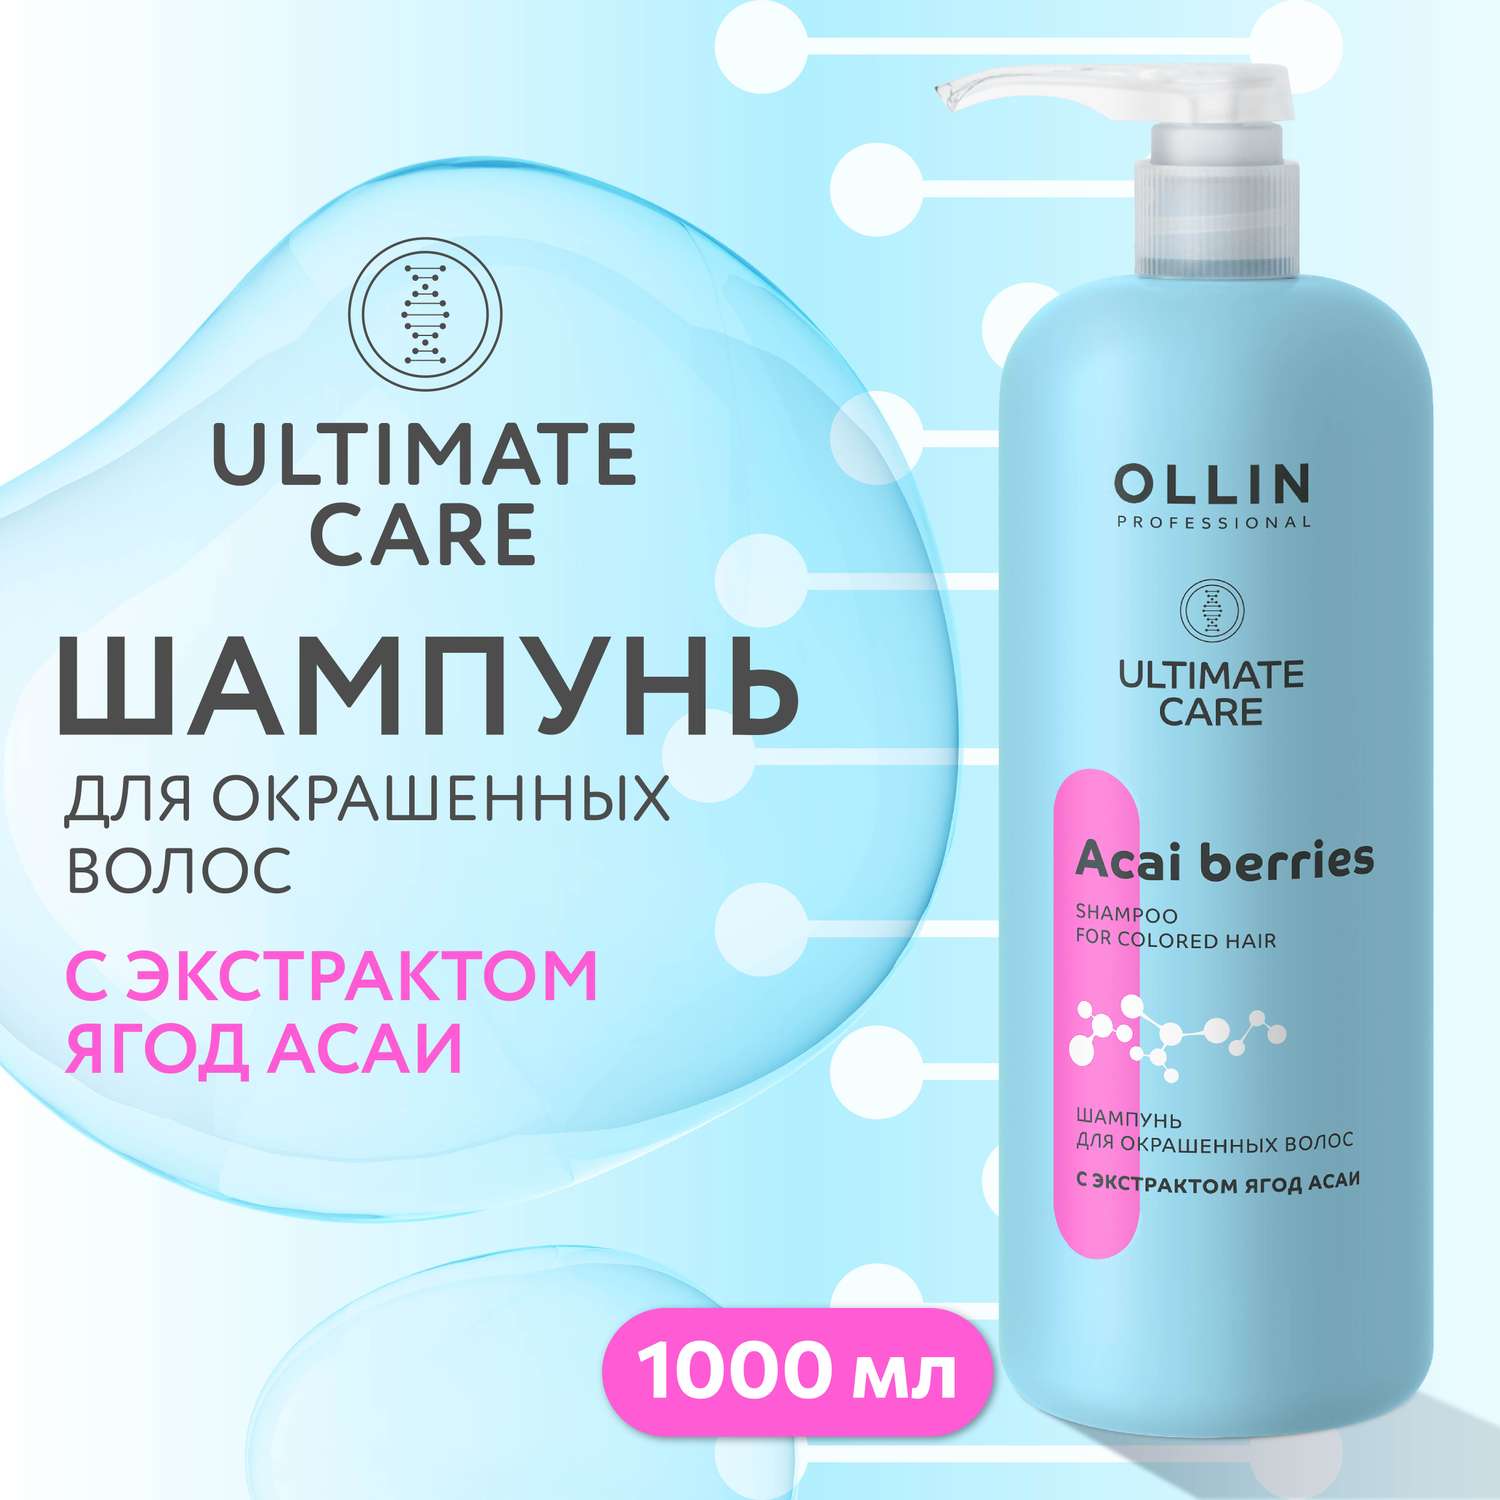 Шампунь Ollin ultimate care для окрашенных волос с экстрактом ягод асаи 1000 мл - фото 2